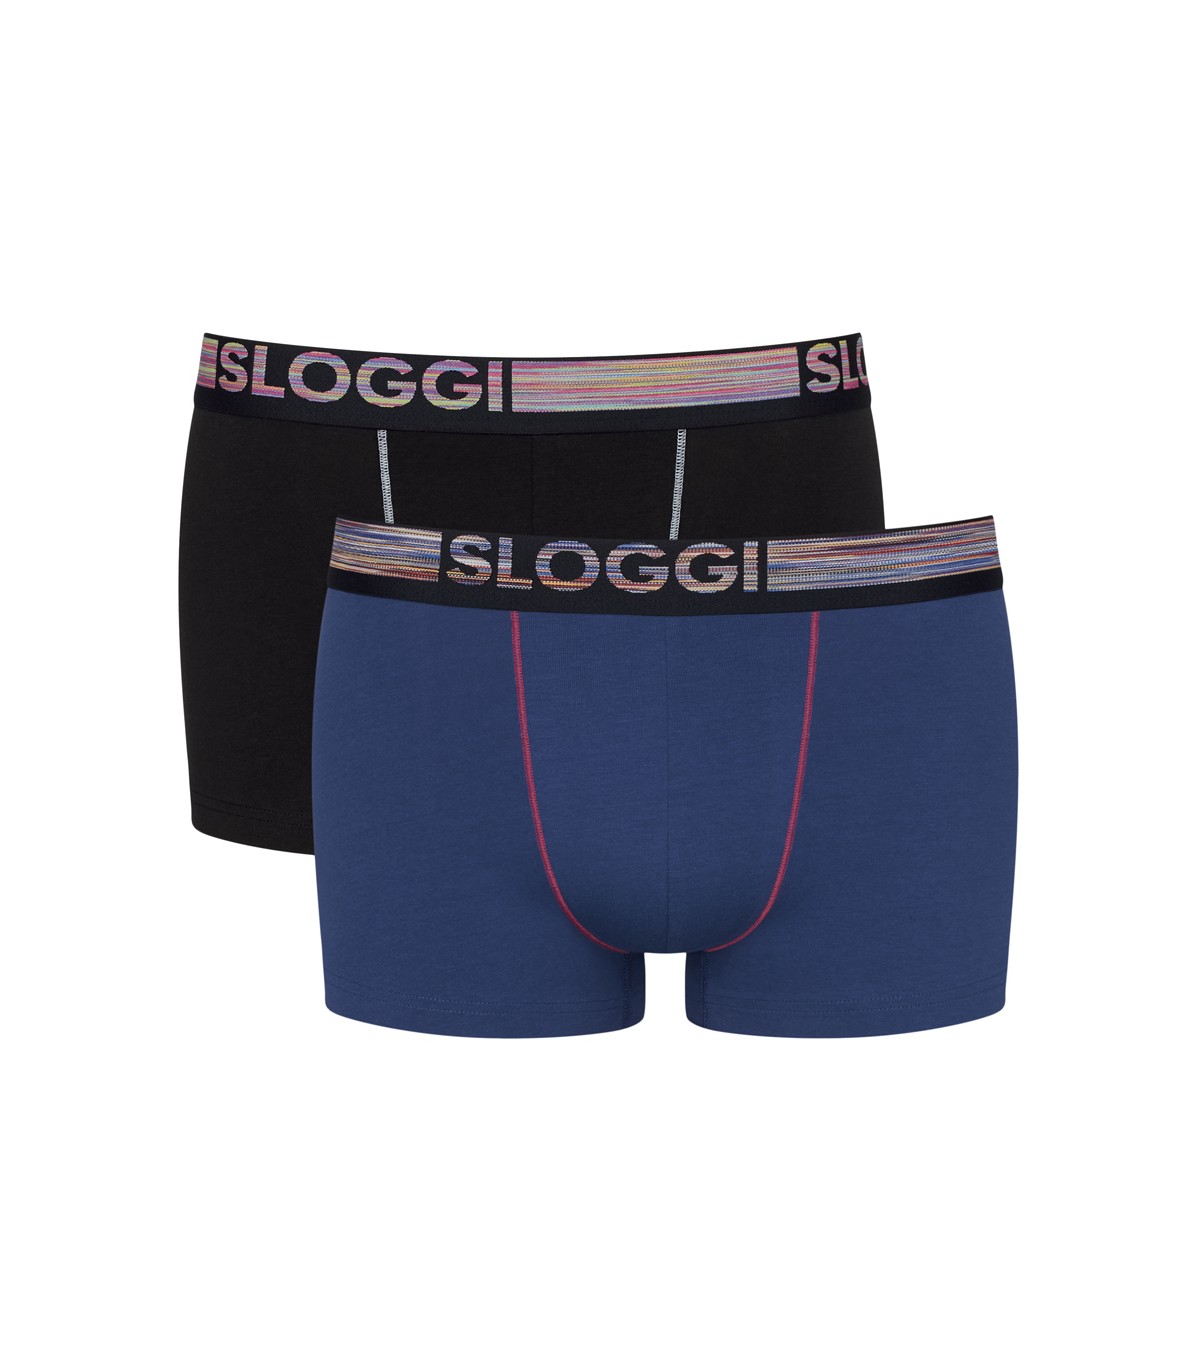 Sloggi Underwear - Briefs, Bras & More